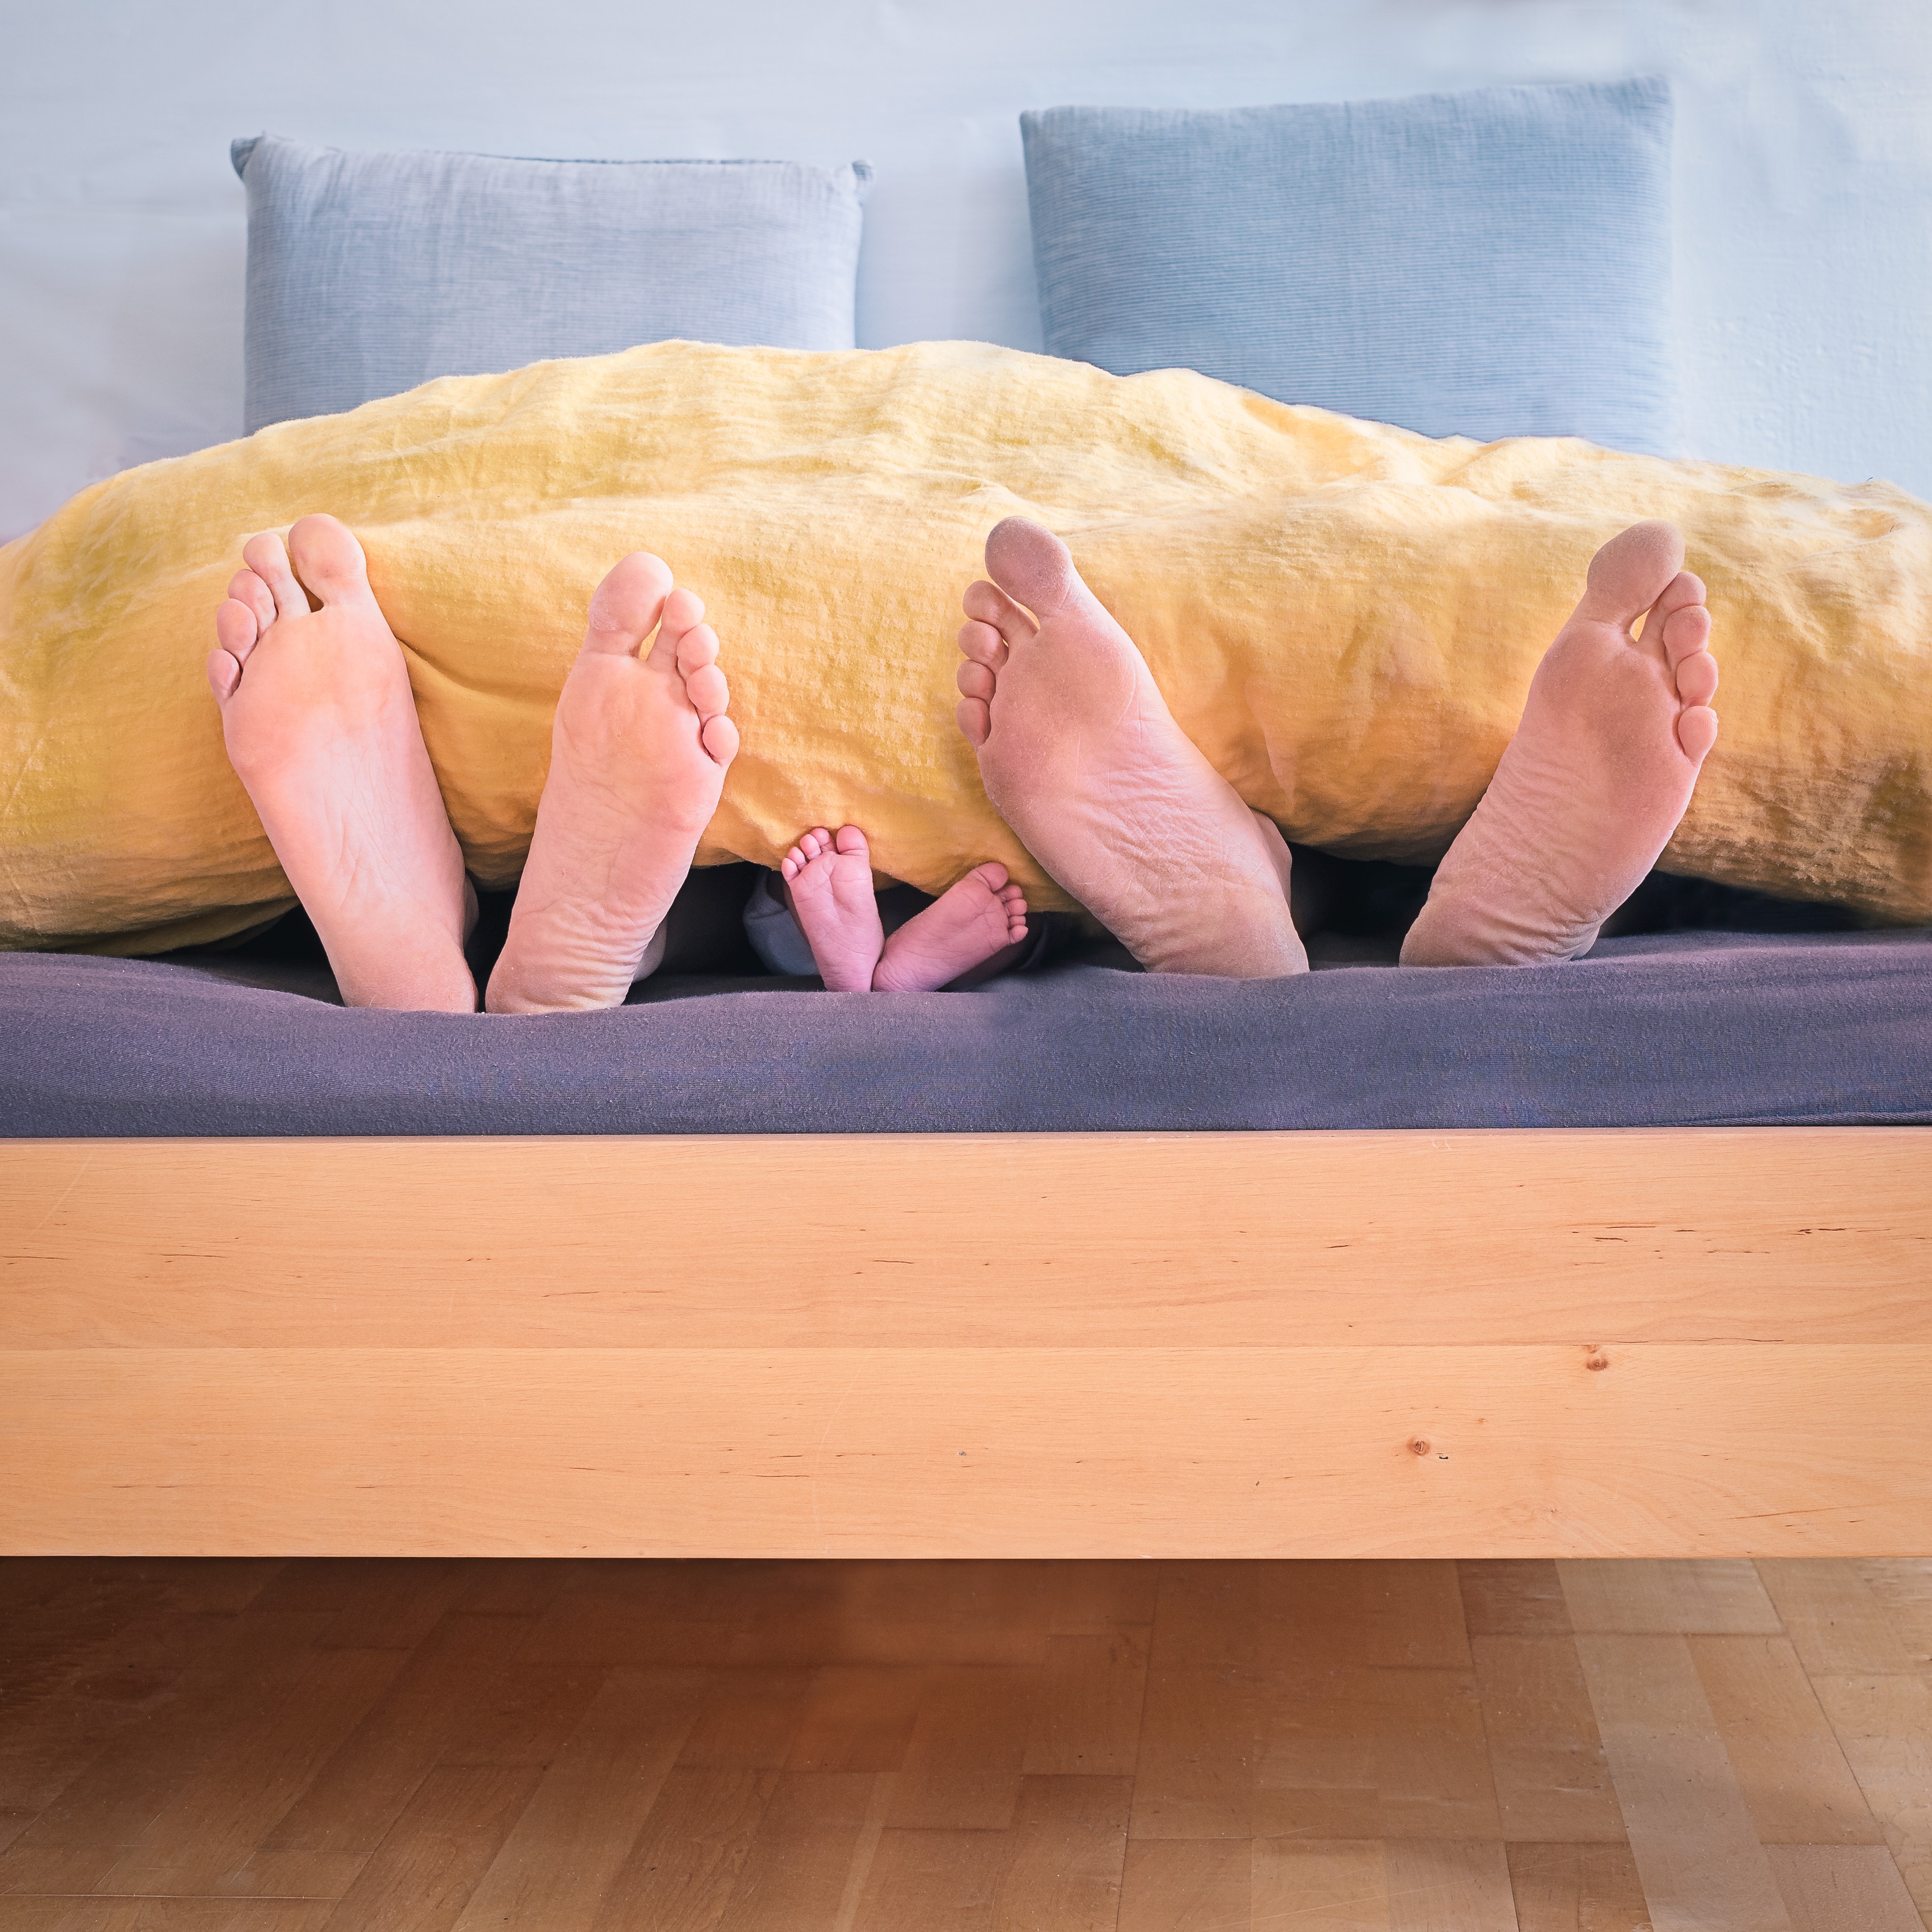 Drei Paar Füße (Eltern und Kind) schauen unter einer Bettdecke vor